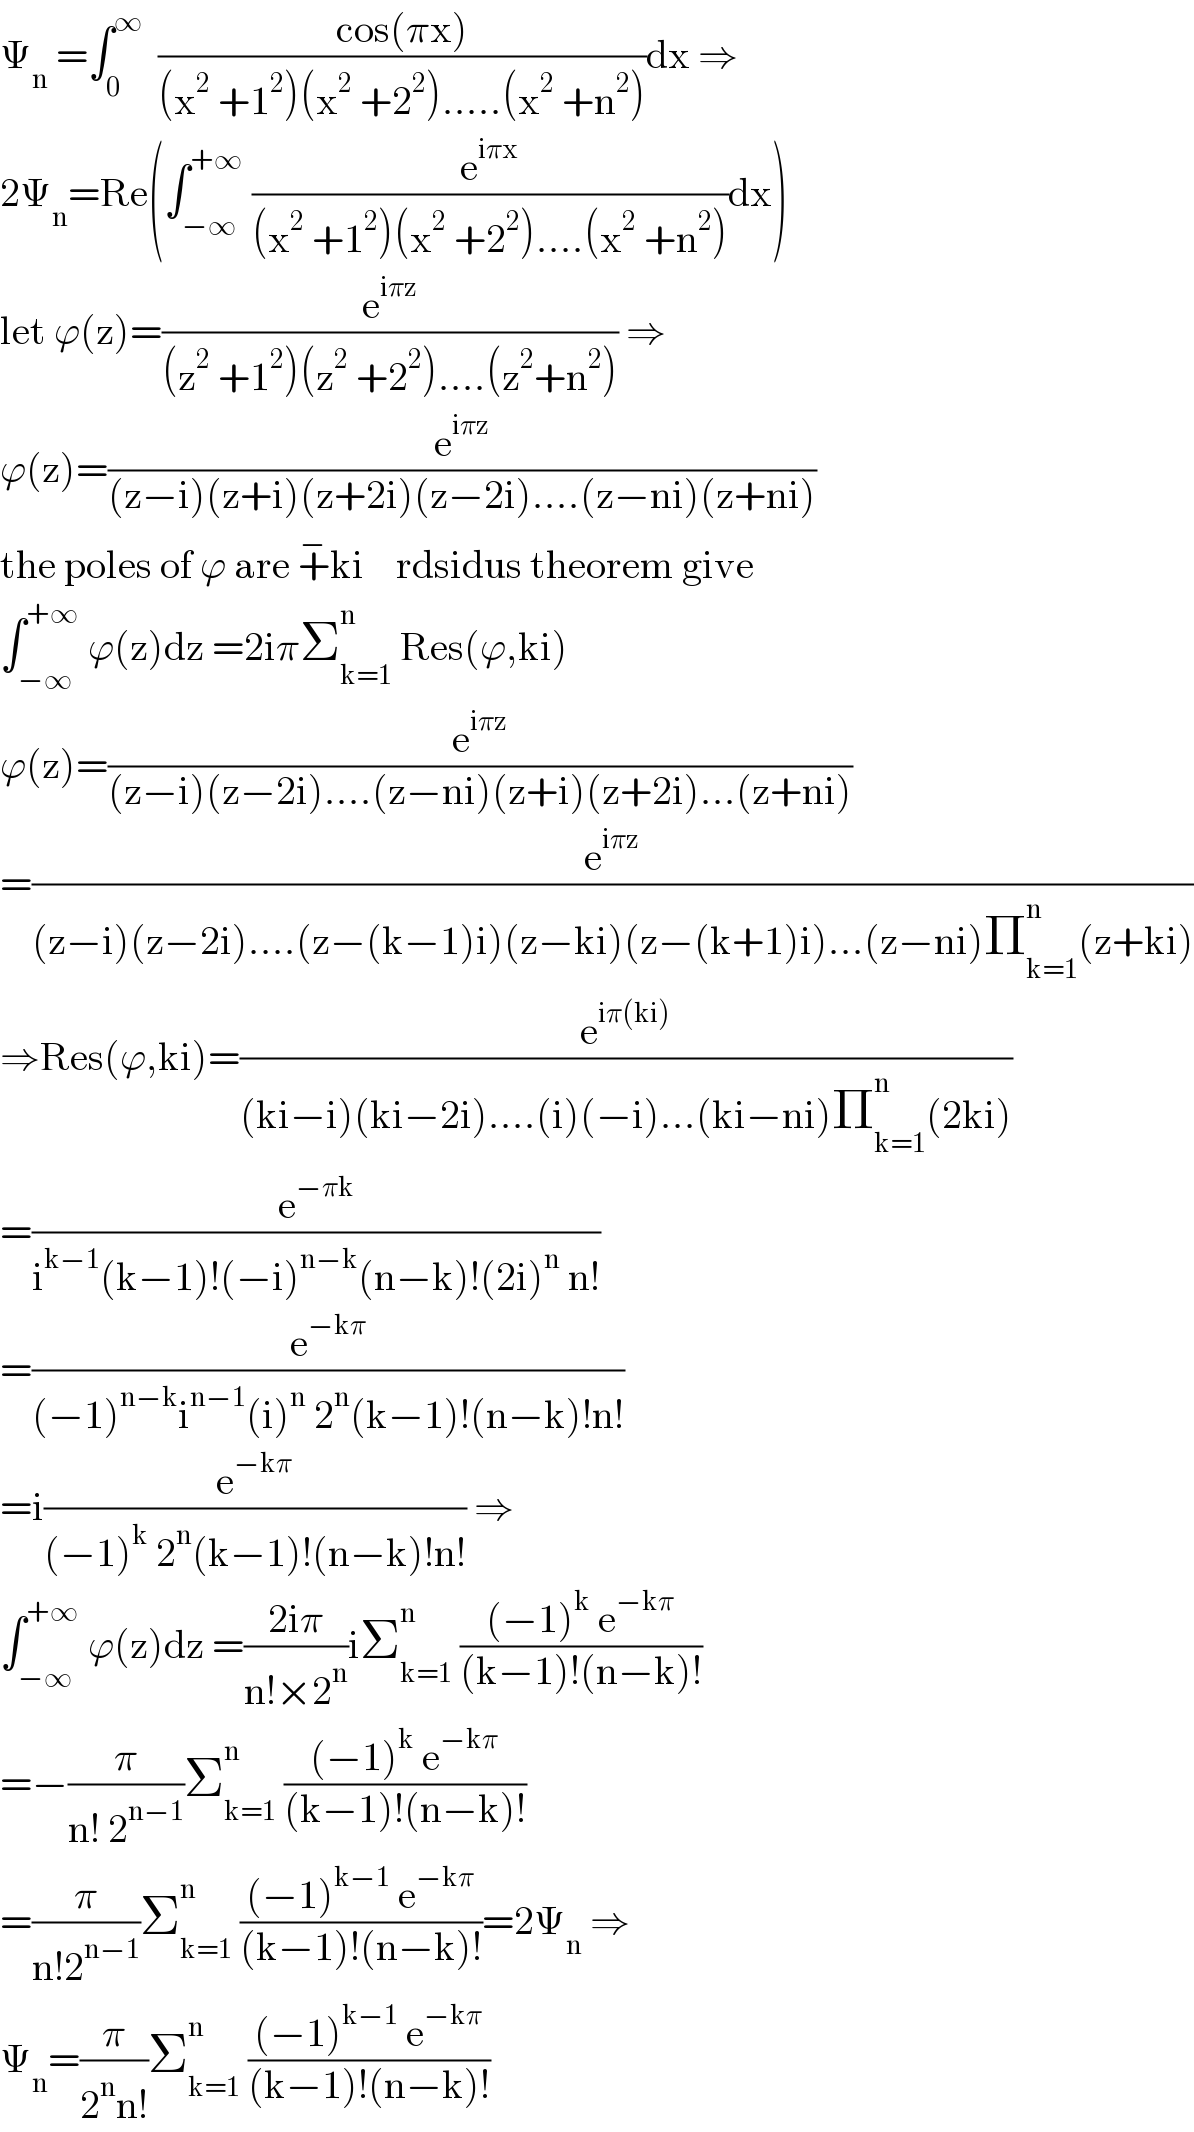 Ψ_n  =∫_0 ^∞   ((cos(πx))/((x^2  +1^2 )(x^2  +2^2 ).....(x^2  +n^2 )))dx ⇒  2Ψ_n =Re(∫_(−∞) ^(+∞)  (e^(iπx) /((x^2  +1^2 )(x^2  +2^2 )....(x^2  +n^2 )))dx)  let ϕ(z)=(e^(iπz) /((z^2  +1^2 )(z^2  +2^2 )....(z^2 +n^2 ))) ⇒  ϕ(z)=(e^(iπz) /((z−i)(z+i)(z+2i)(z−2i)....(z−ni)(z+ni)))  the poles of ϕ are +^− ki    rdsidus theorem give  ∫_(−∞) ^(+∞)  ϕ(z)dz =2iπΣ_(k=1) ^n  Res(ϕ,ki)  ϕ(z)=(e^(iπz) /((z−i)(z−2i)....(z−ni)(z+i)(z+2i)...(z+ni)))  =(e^(iπz) /((z−i)(z−2i)....(z−(k−1)i)(z−ki)(z−(k+1)i)...(z−ni)Π_(k=1) ^n (z+ki)))  ⇒Res(ϕ,ki)=(e^(iπ(ki)) /((ki−i)(ki−2i)....(i)(−i)...(ki−ni)Π_(k=1) ^n (2ki)))  =(e^(−πk) /(i^(k−1) (k−1)!(−i)^(n−k) (n−k)!(2i)^n  n!))  =(e^(−kπ) /((−1)^(n−k) i^(n−1) (i)^n  2^n (k−1)!(n−k)!n!))  =i(e^(−kπ) /((−1)^k  2^n (k−1)!(n−k)!n!)) ⇒  ∫_(−∞) ^(+∞)  ϕ(z)dz =((2iπ)/(n!×2^n ))iΣ_(k=1) ^n  (((−1)^k  e^(−kπ) )/((k−1)!(n−k)!))  =−(π/(n! 2^(n−1) ))Σ_(k=1) ^n  (((−1)^k  e^(−kπ) )/((k−1)!(n−k)!))  =(π/(n!2^(n−1) ))Σ_(k=1) ^n  (((−1)^(k−1)  e^(−kπ) )/((k−1)!(n−k)!))=2Ψ_n  ⇒  Ψ_n =(π/(2^n n!))Σ_(k=1) ^n  (((−1)^(k−1)  e^(−kπ) )/((k−1)!(n−k)!))  